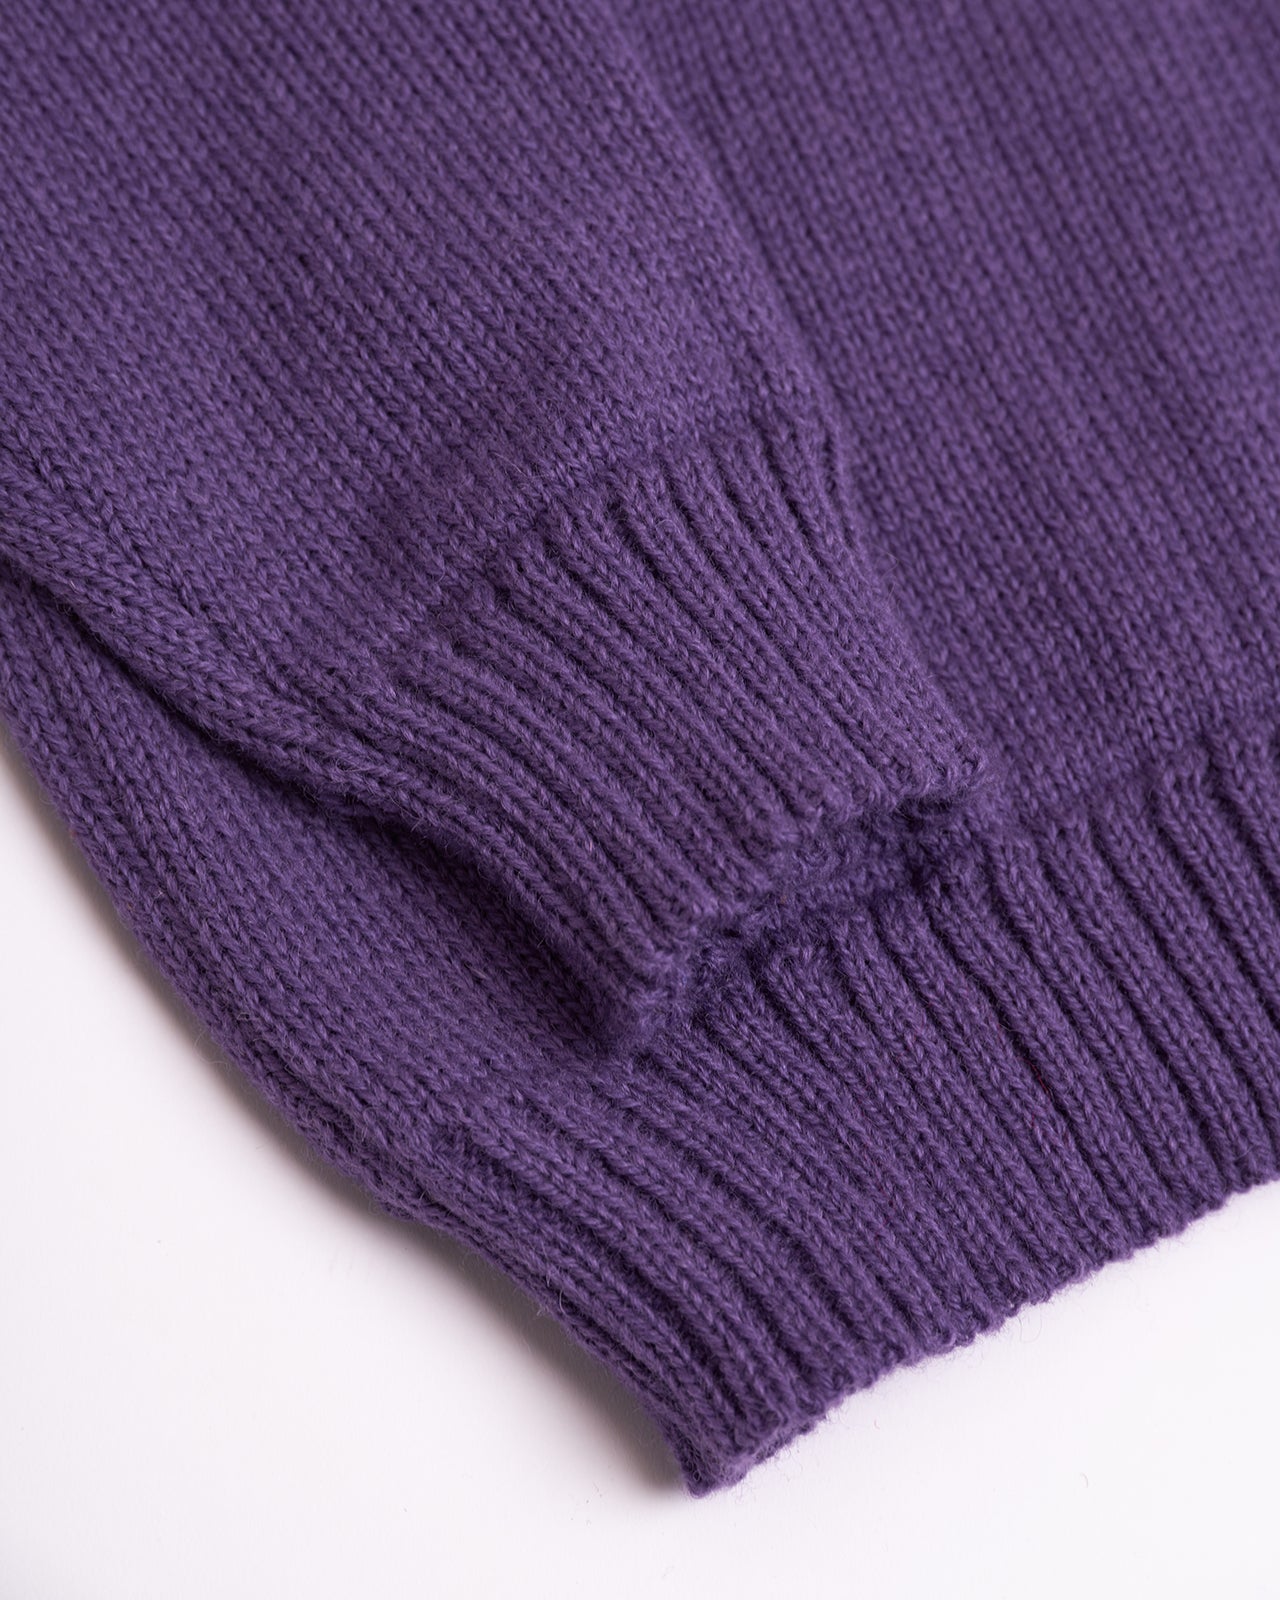 purple wool sweater details